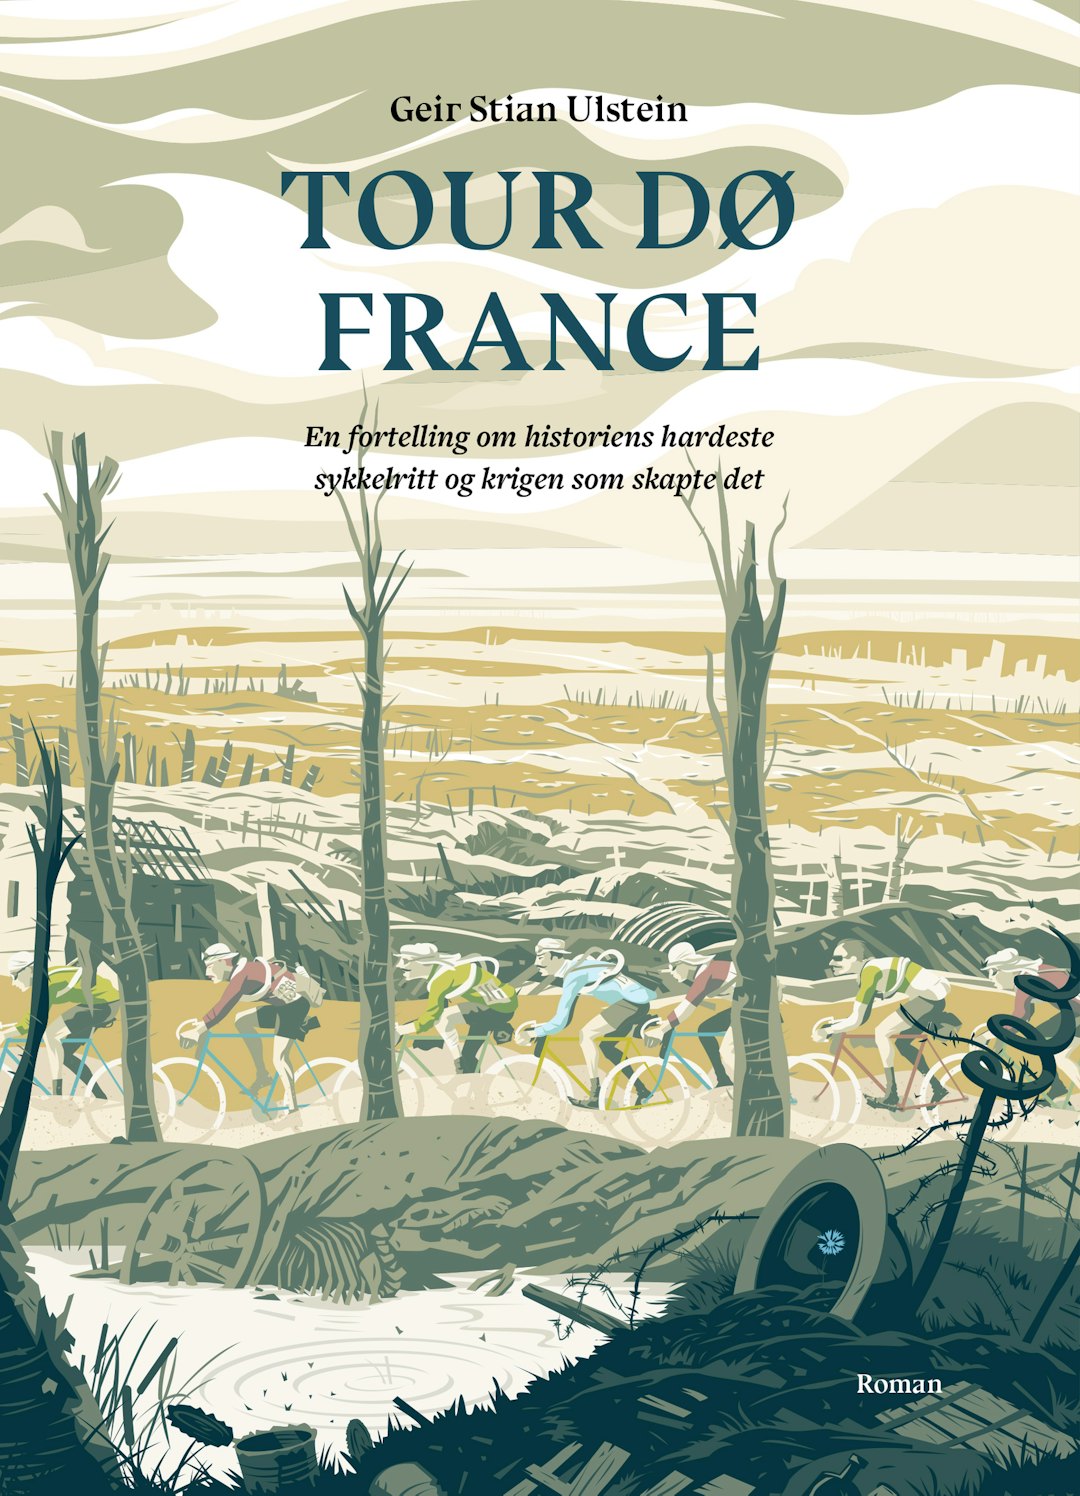 FØRSTE ROMAN: Tour dø France er Fri Flyts første skjønnlitterære utgivelse. Illustrasjon: Simon Scarsbrook